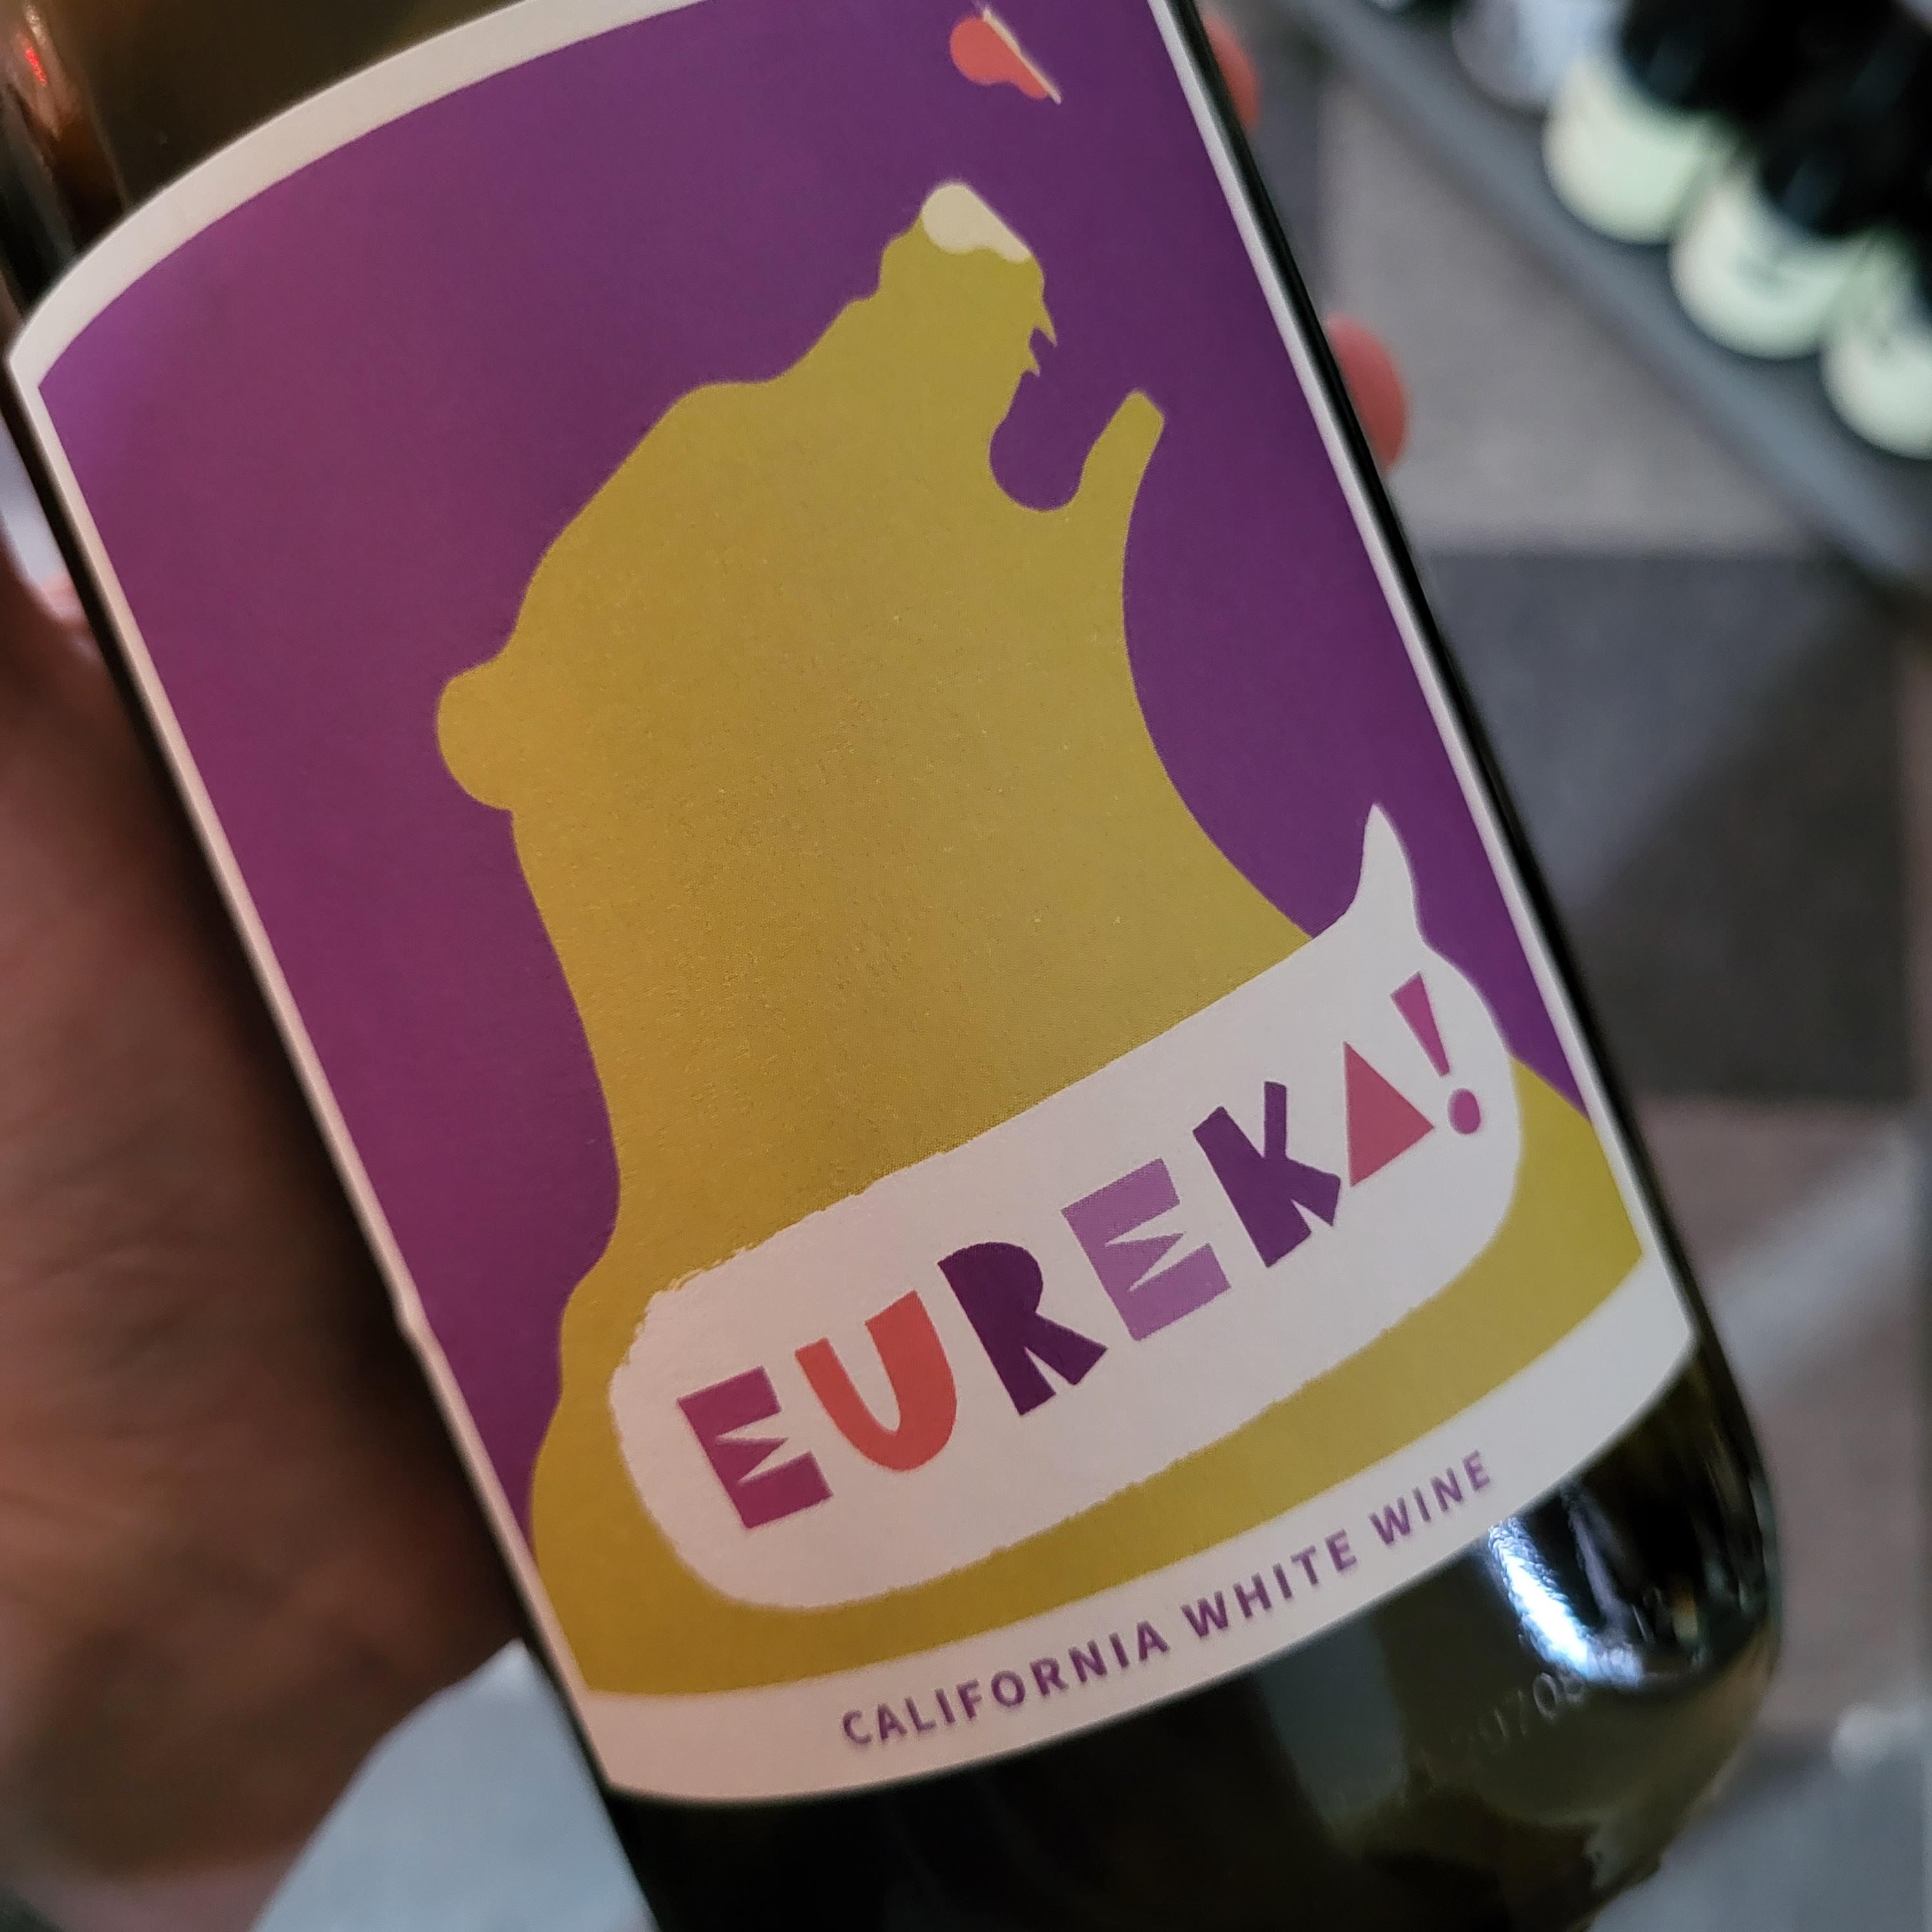 Eureka! Wine Co. California White 2021